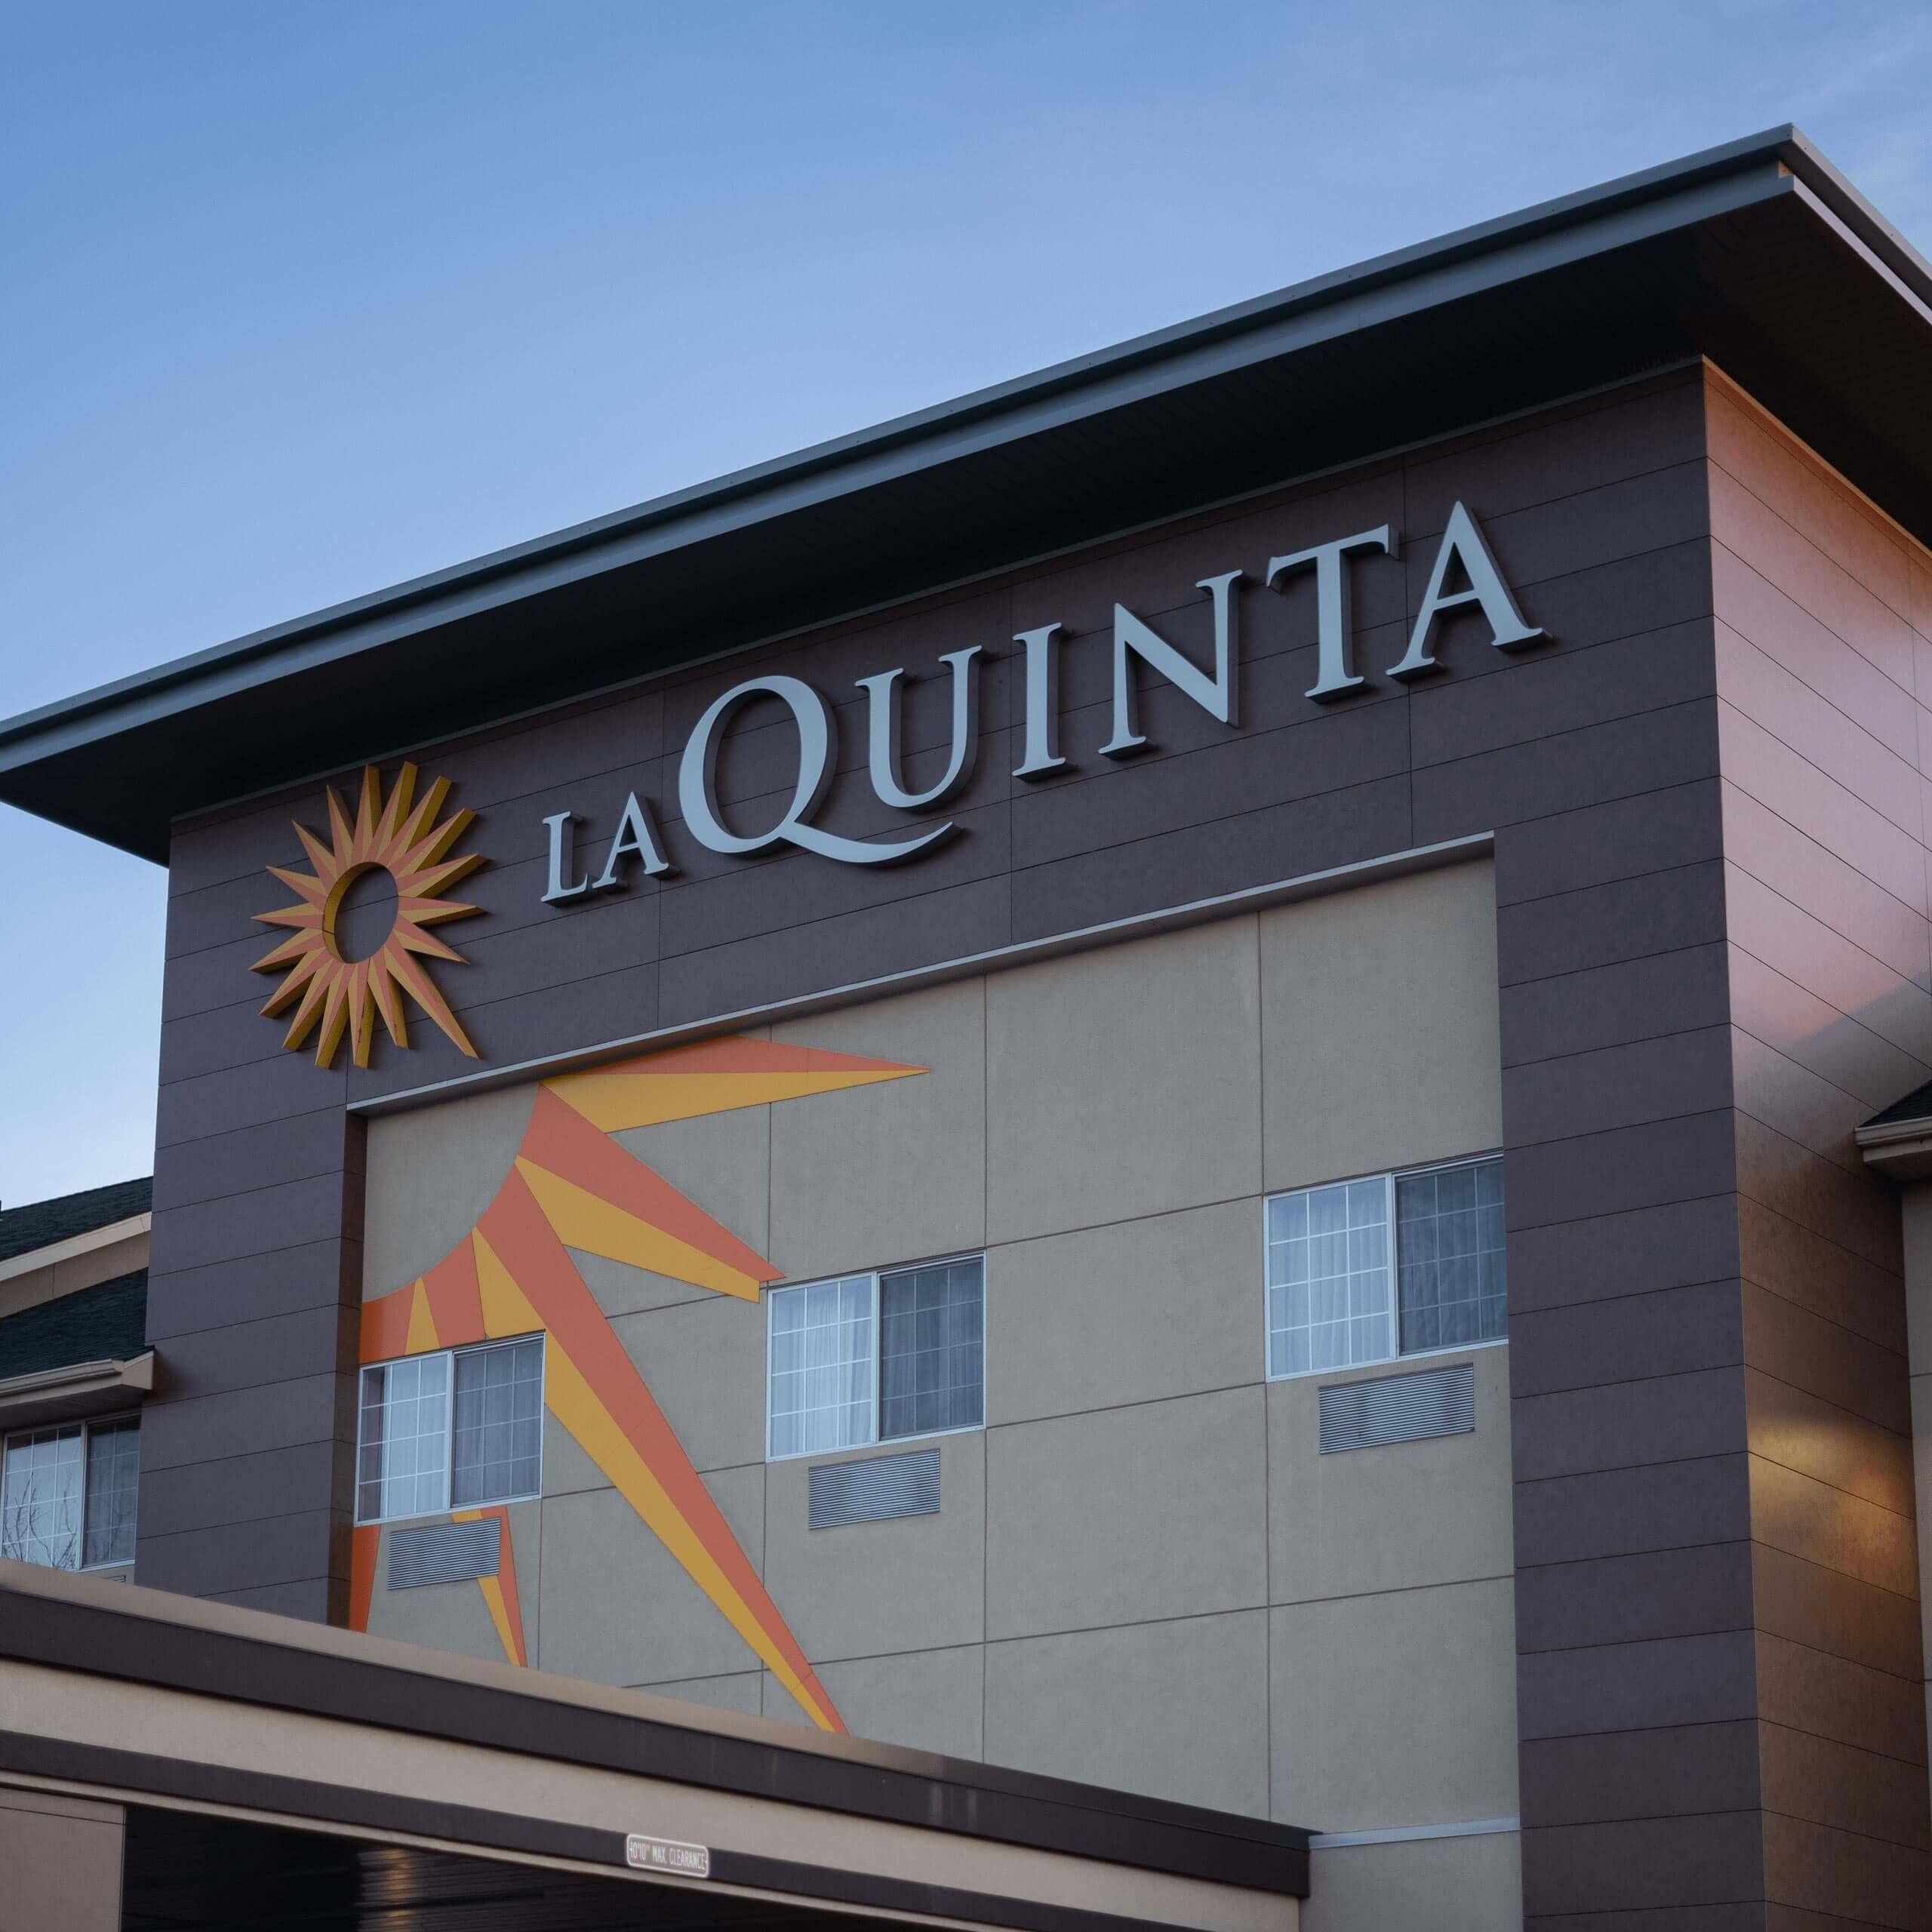 The signage of a La Quinta hotel.